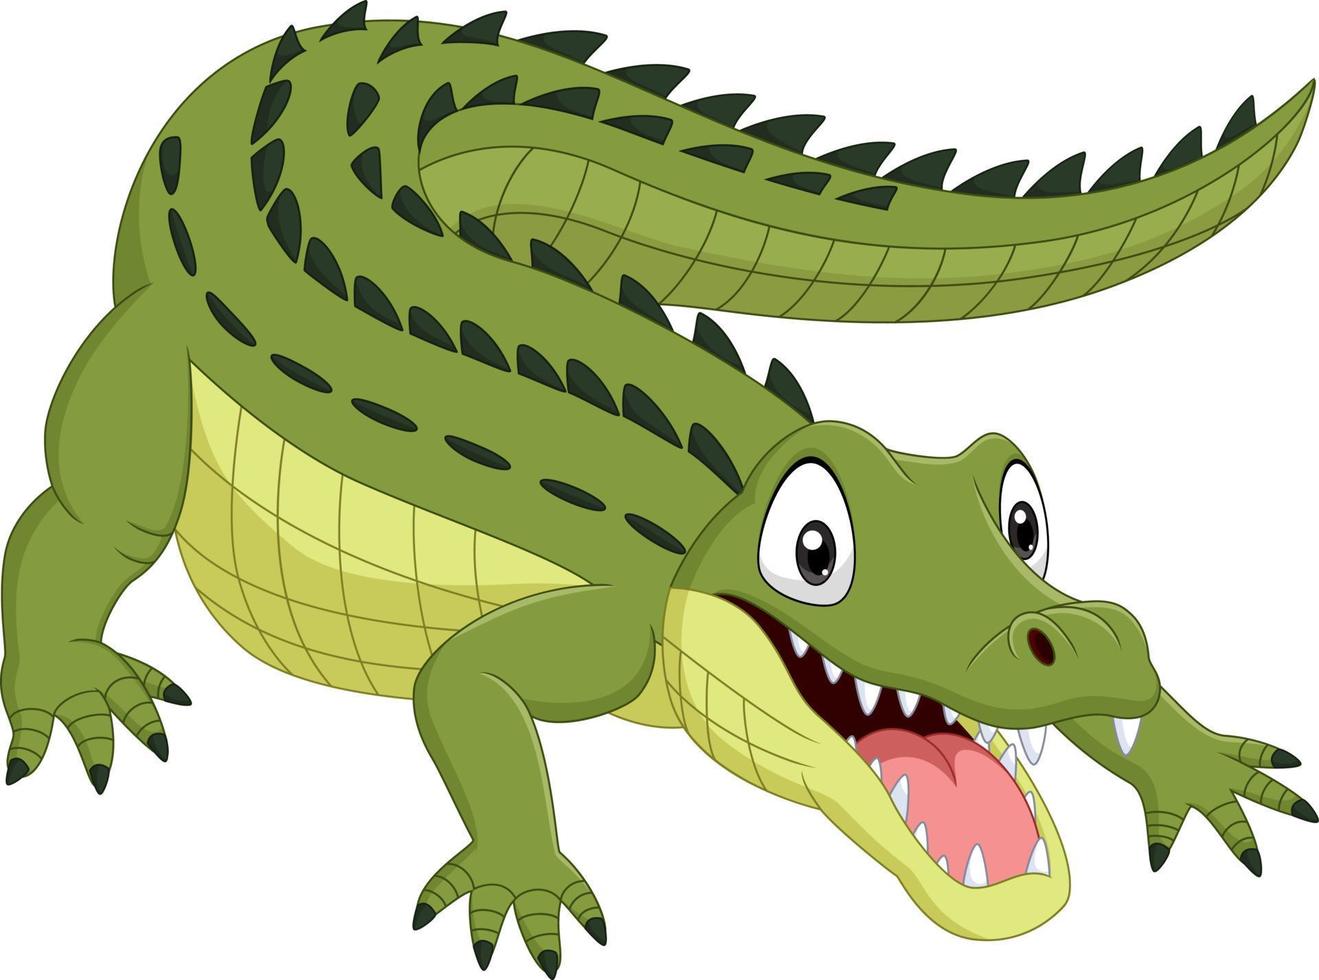 crocodilo de desenho animado isolado no fundo branco vetor